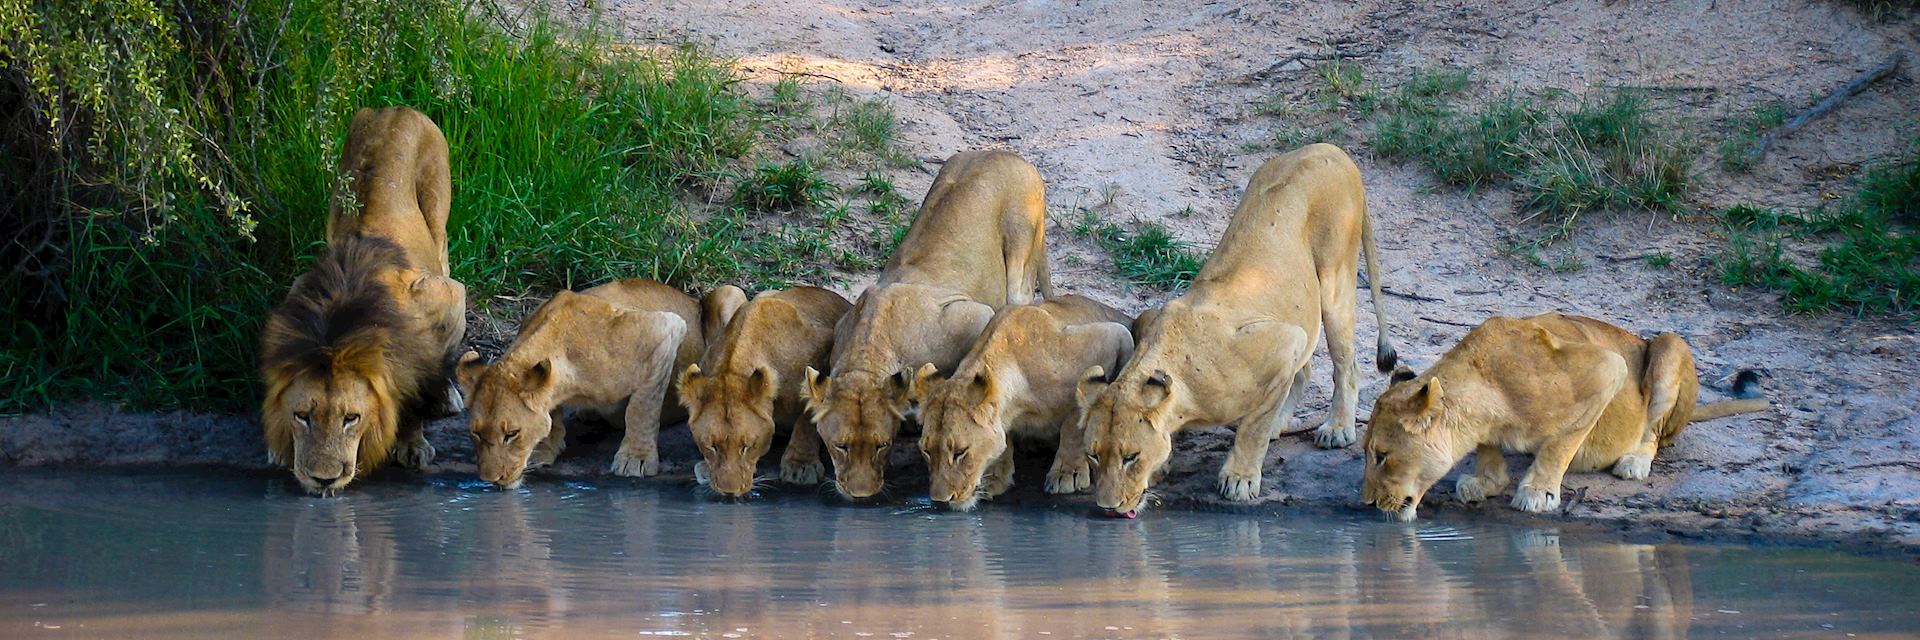 Pride of lion in Kruger National Park